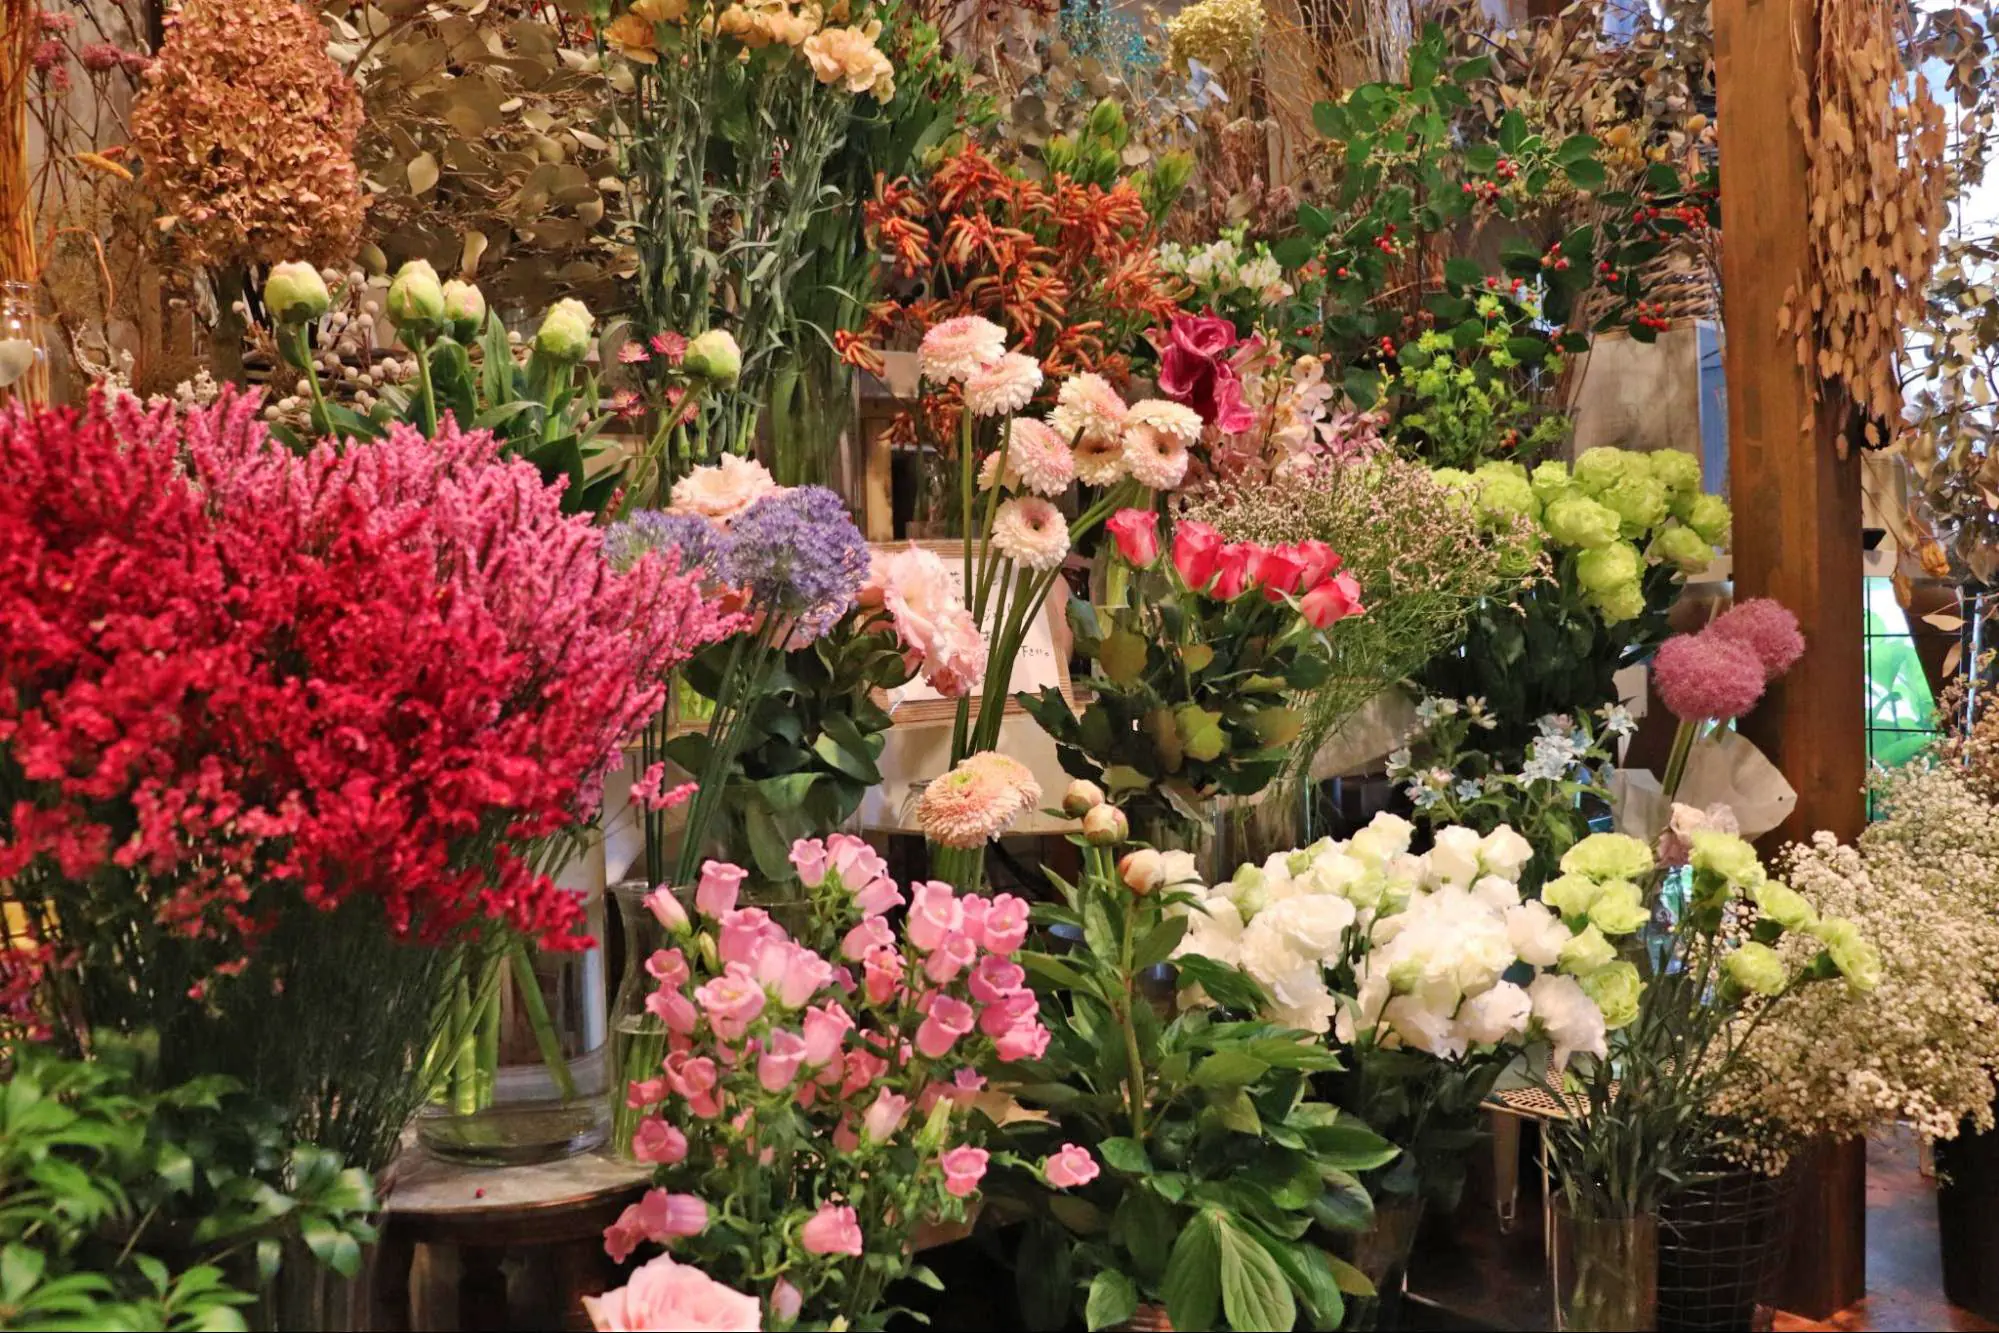 藤之丘的花卉杂货店“Atelier Trefle”